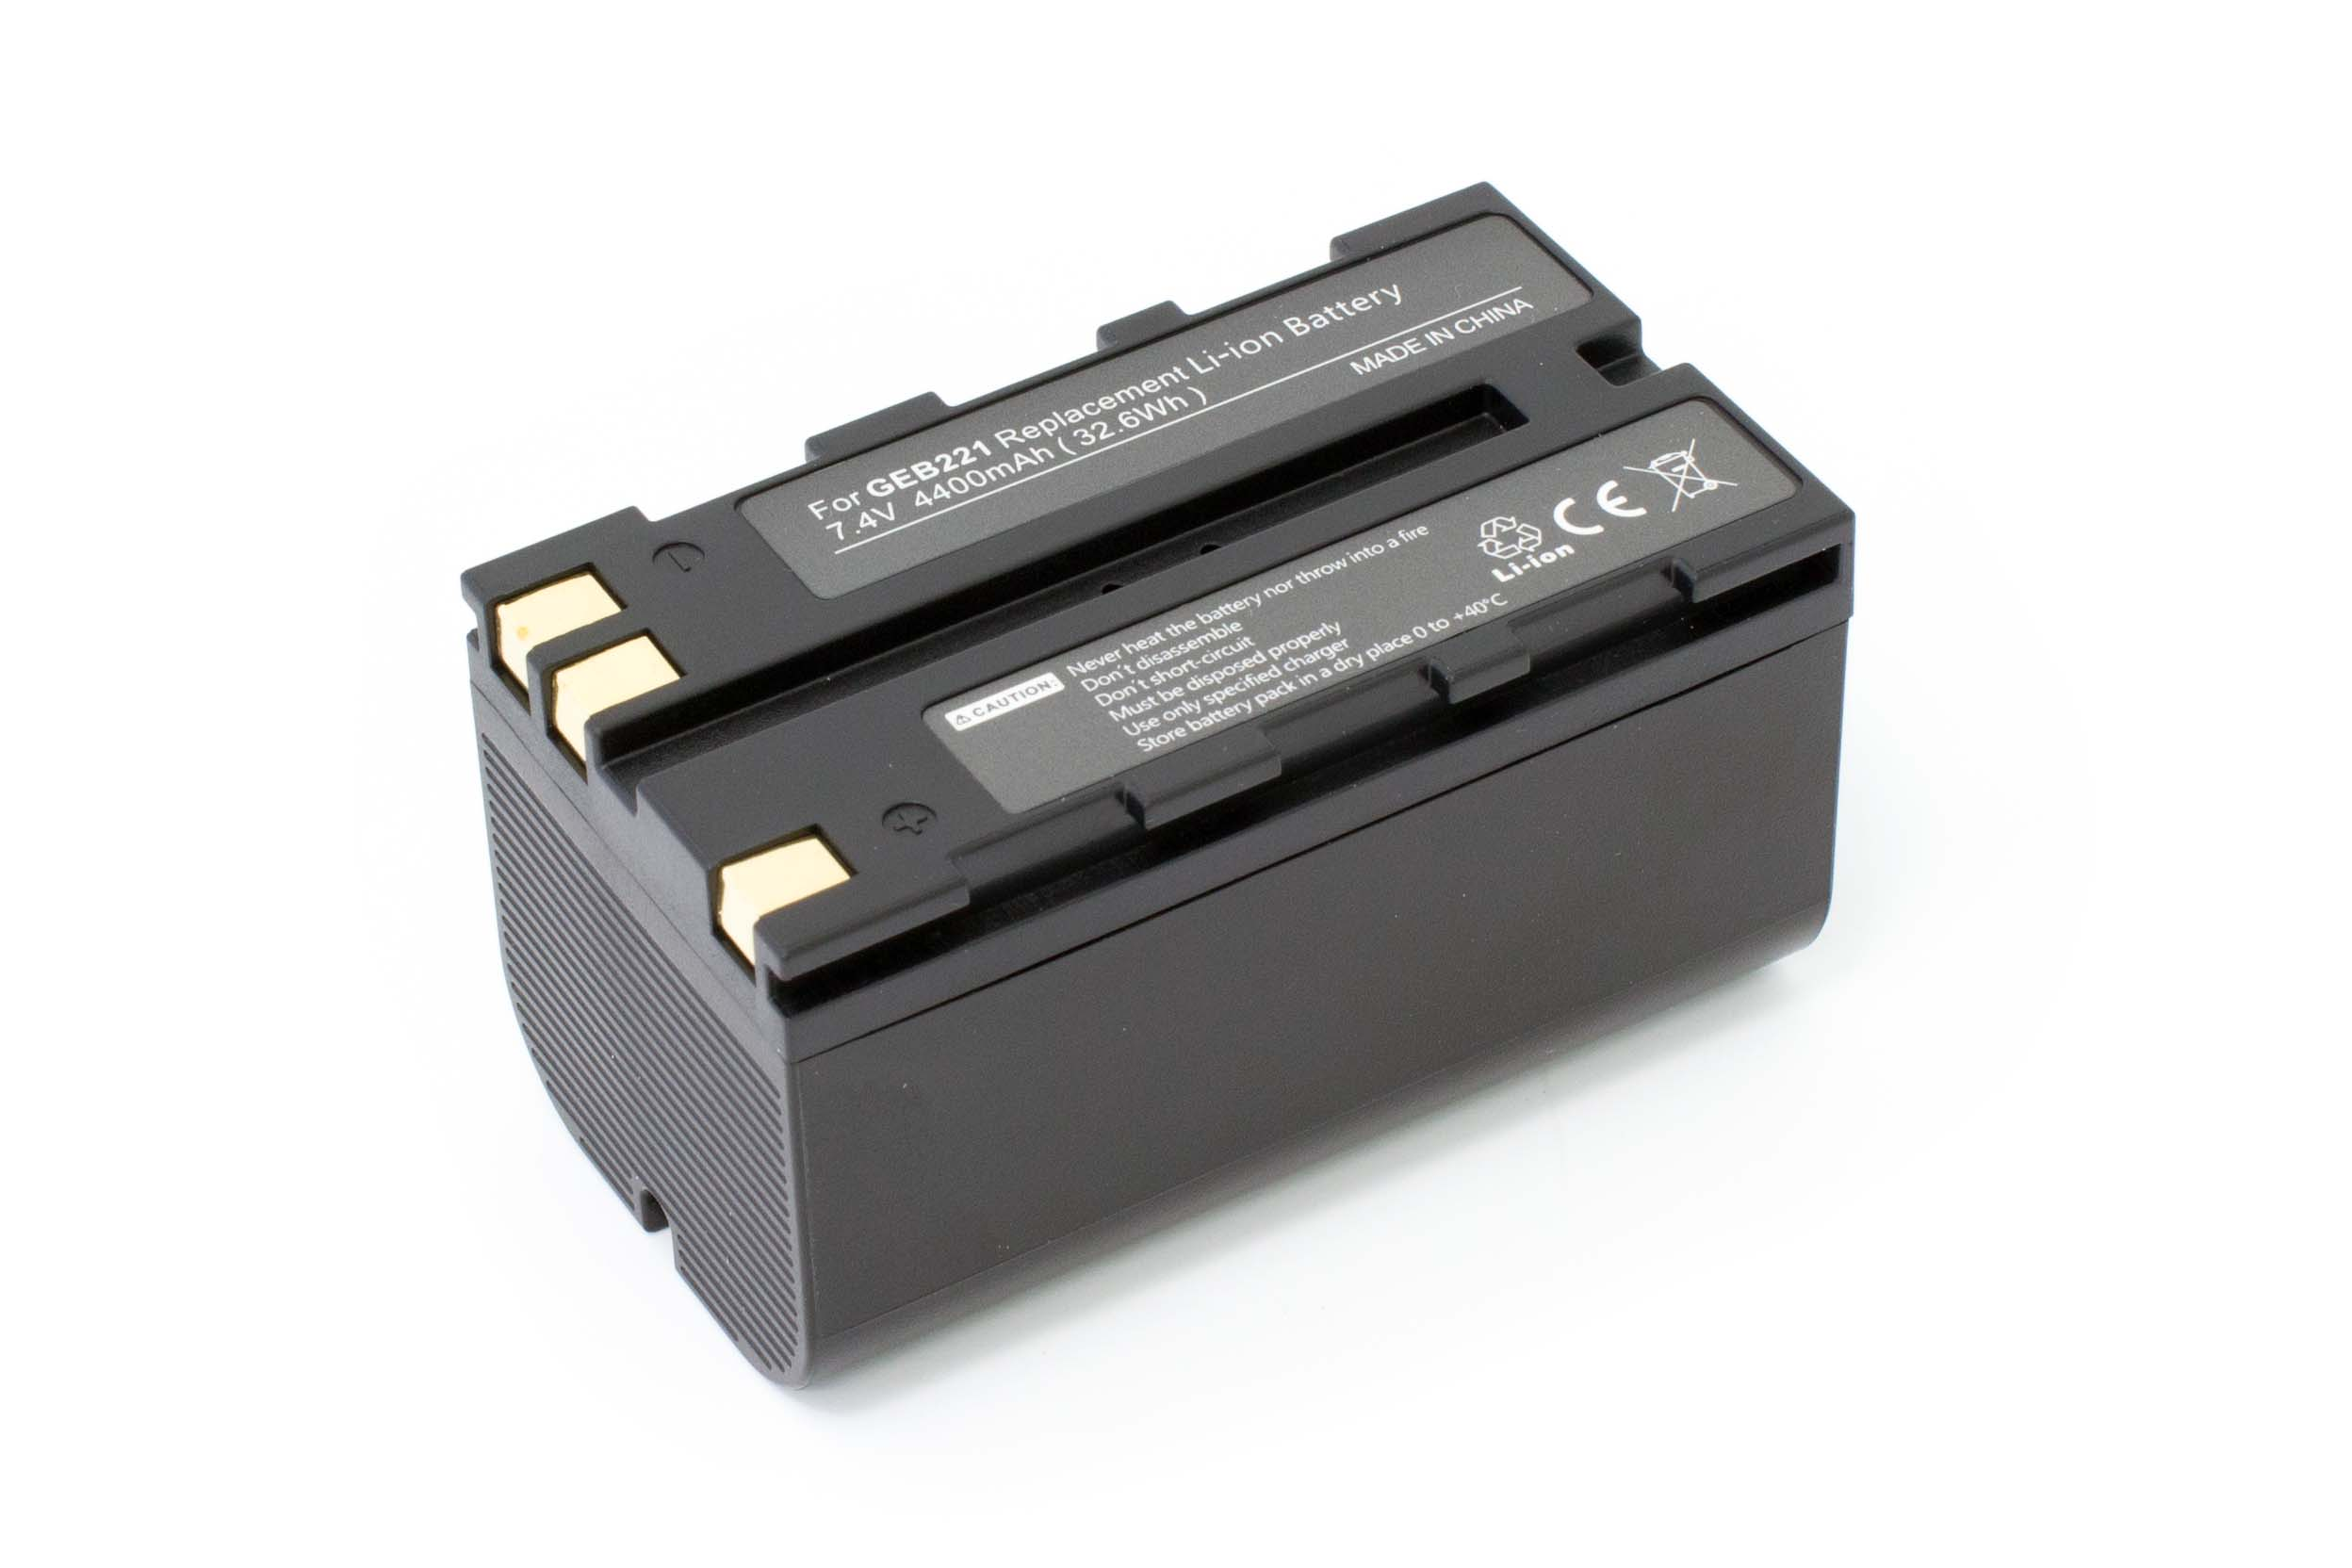 VHBW kompatibel mit Leica SR520, Volt, SR510, 4400 - 7.4 GPS, Akku Li-Ion SR20, TC1102, SR530 Messgerät, R6+, Stonex SR500 TC1102C